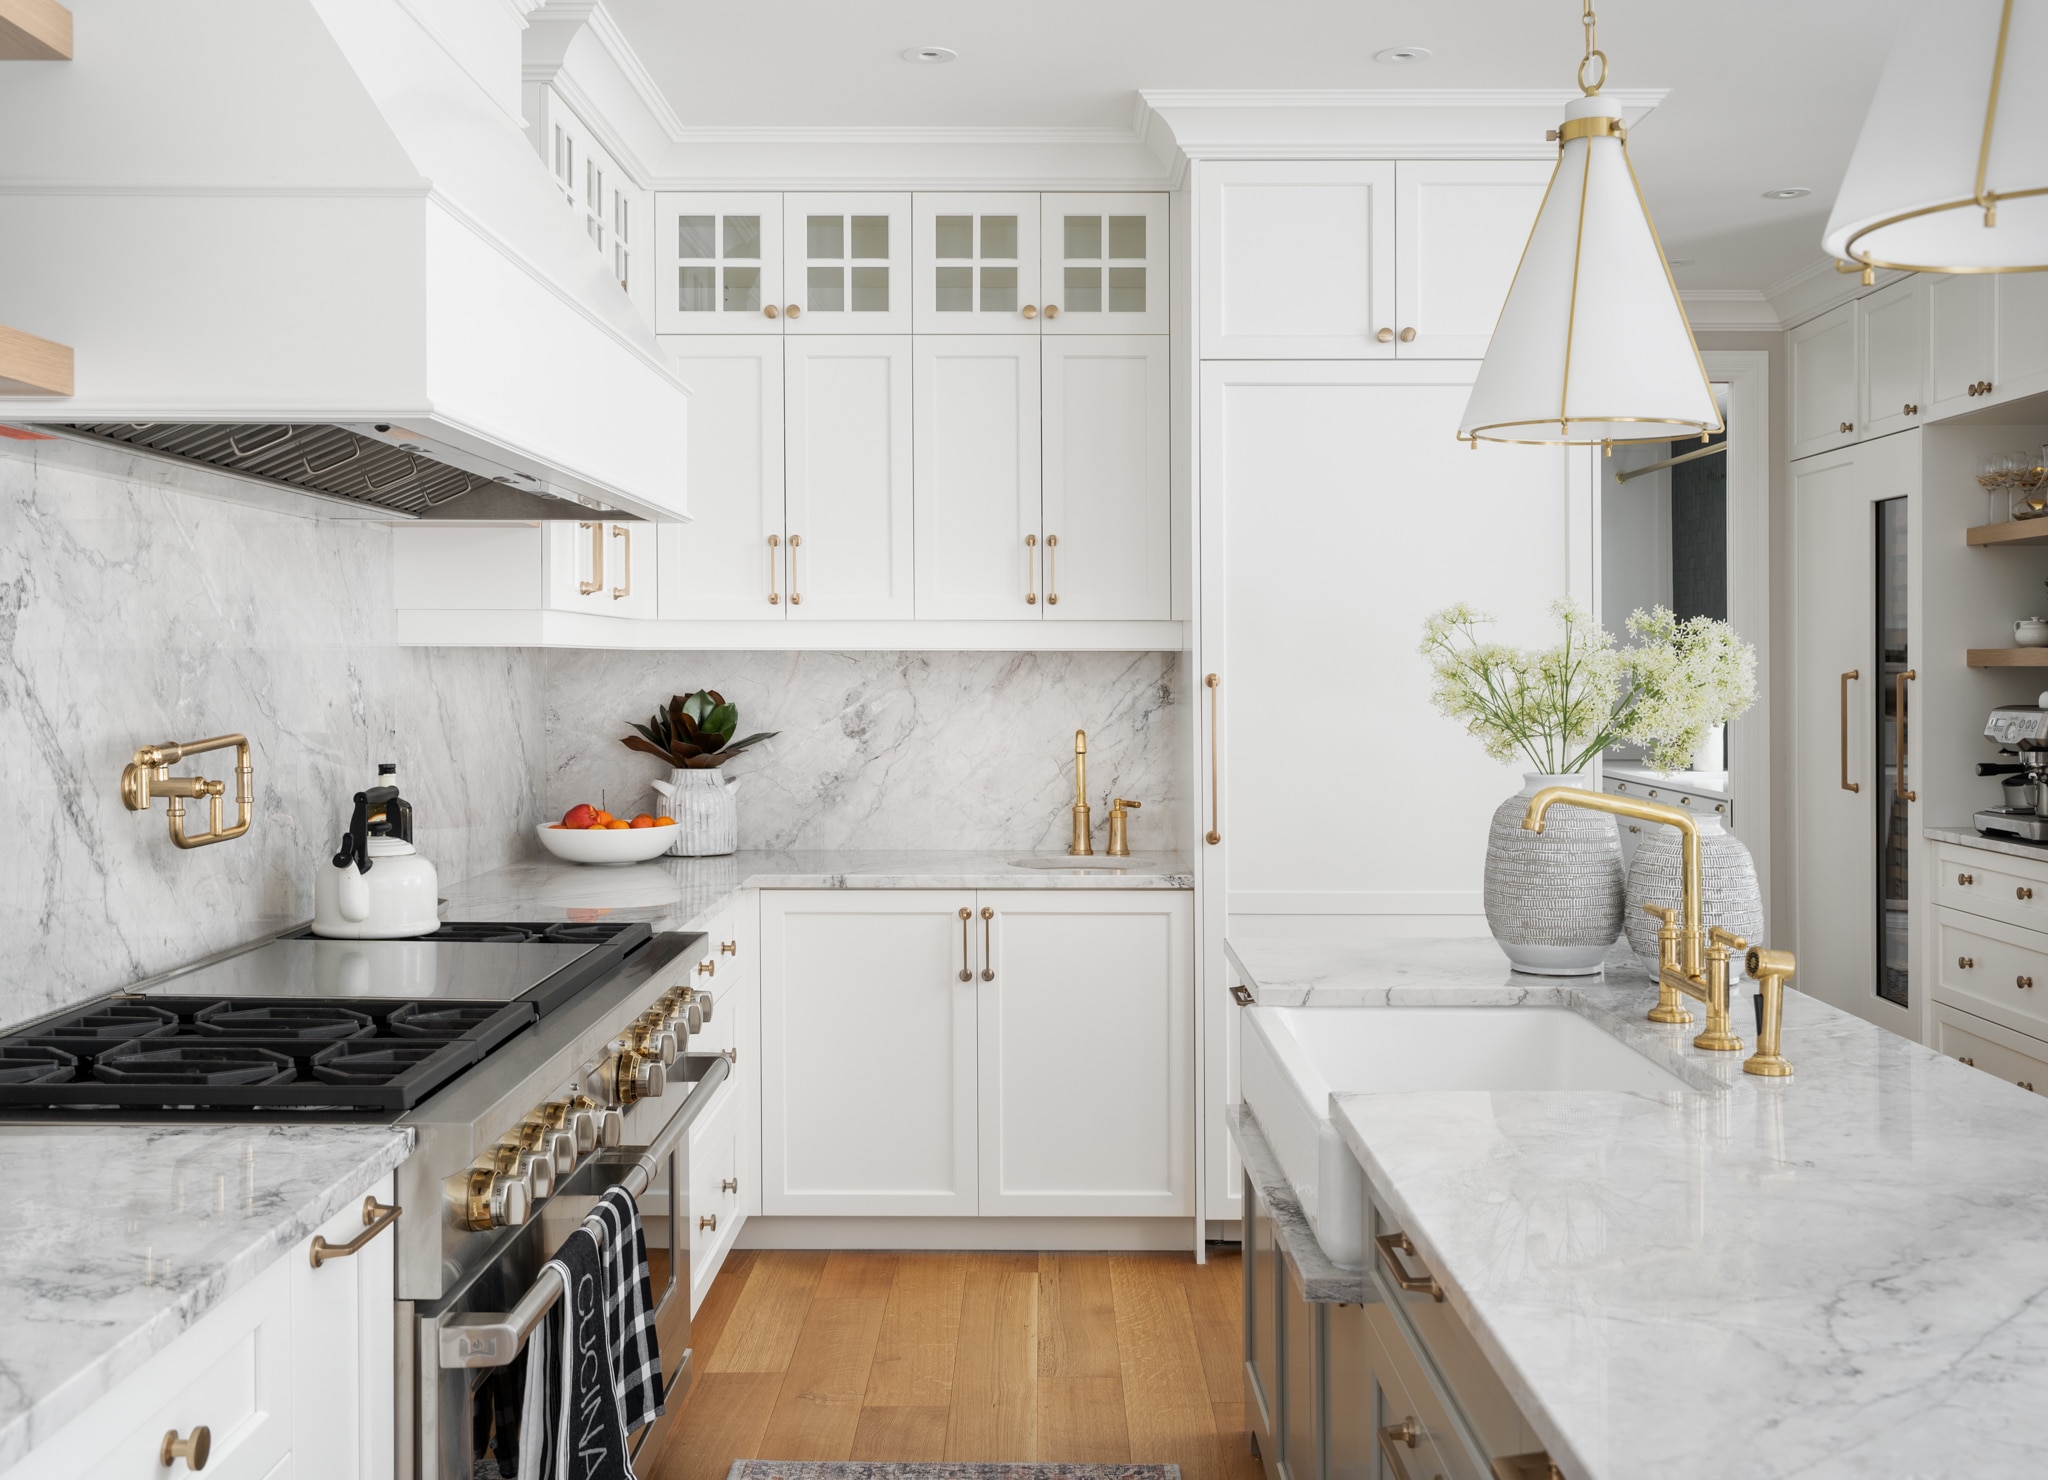 LUX decor’s 2022 Predicted Kitchen Interior Design Trends